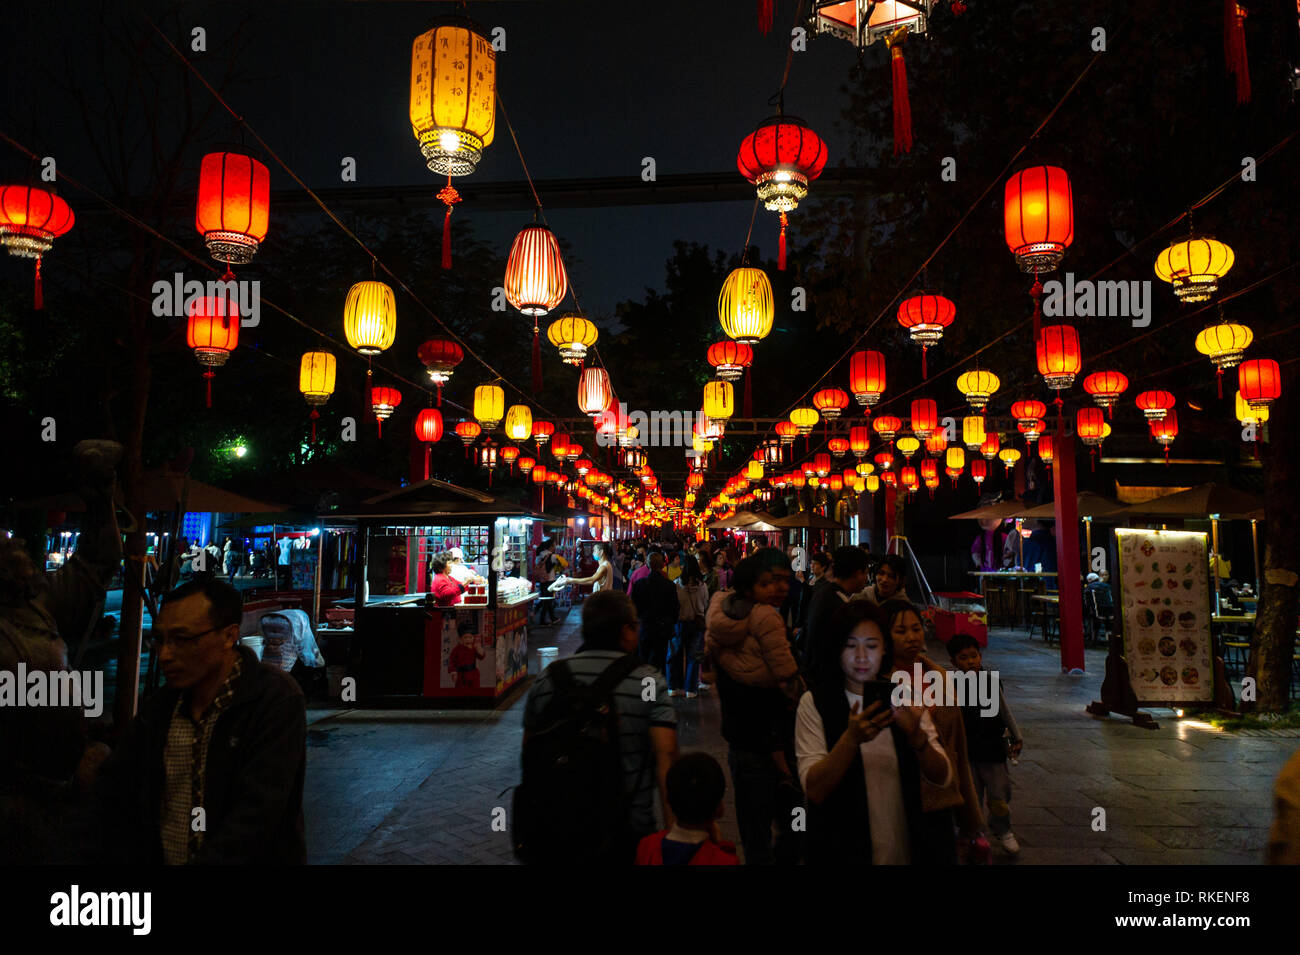 Le lanterne cinesi di notte durante la festa delle lanterne celebrato con colorati lanterna visualizza e decorazioni presso la splendida Cina, una cultura cinese parco a tema a Shenzhen, Cina. Foto Stock